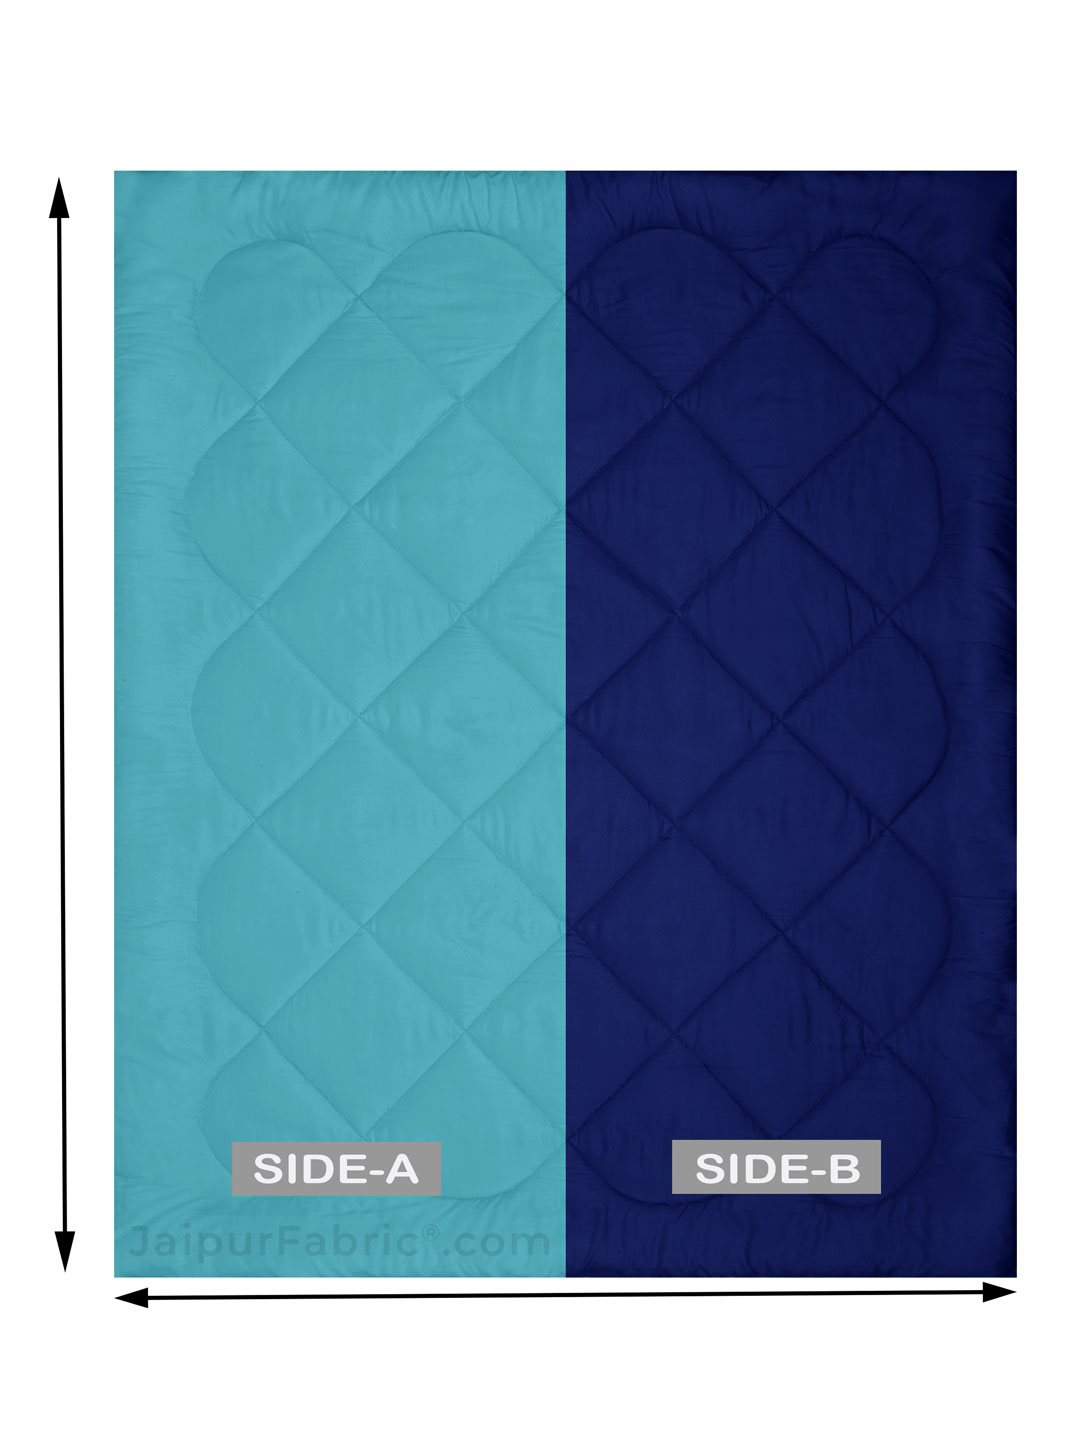 Aqua Green-Navy Blue Double Bed Comforter